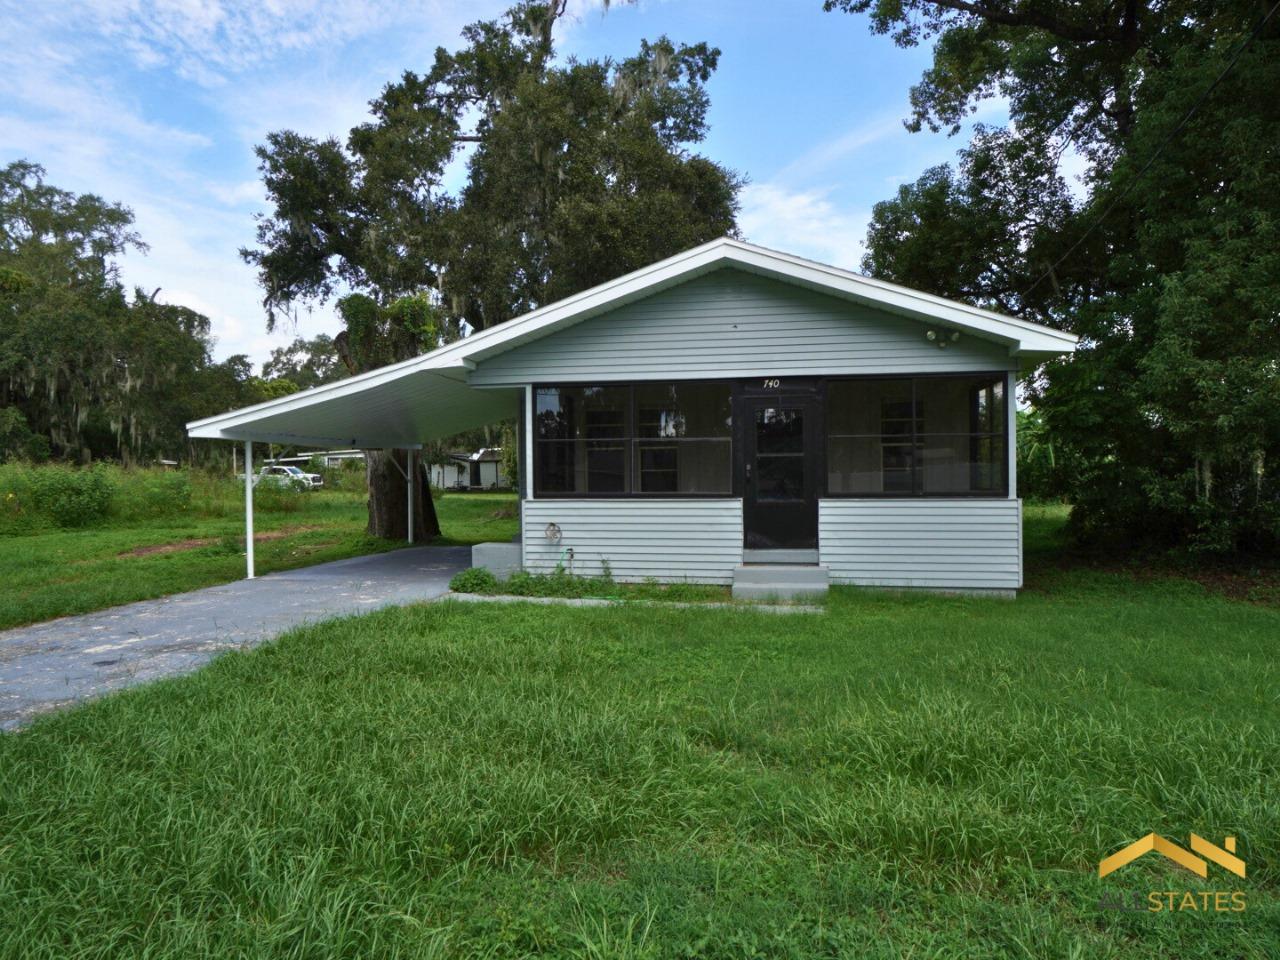 Photo of property: 740 W. Vine St. Bartow, FL 33830